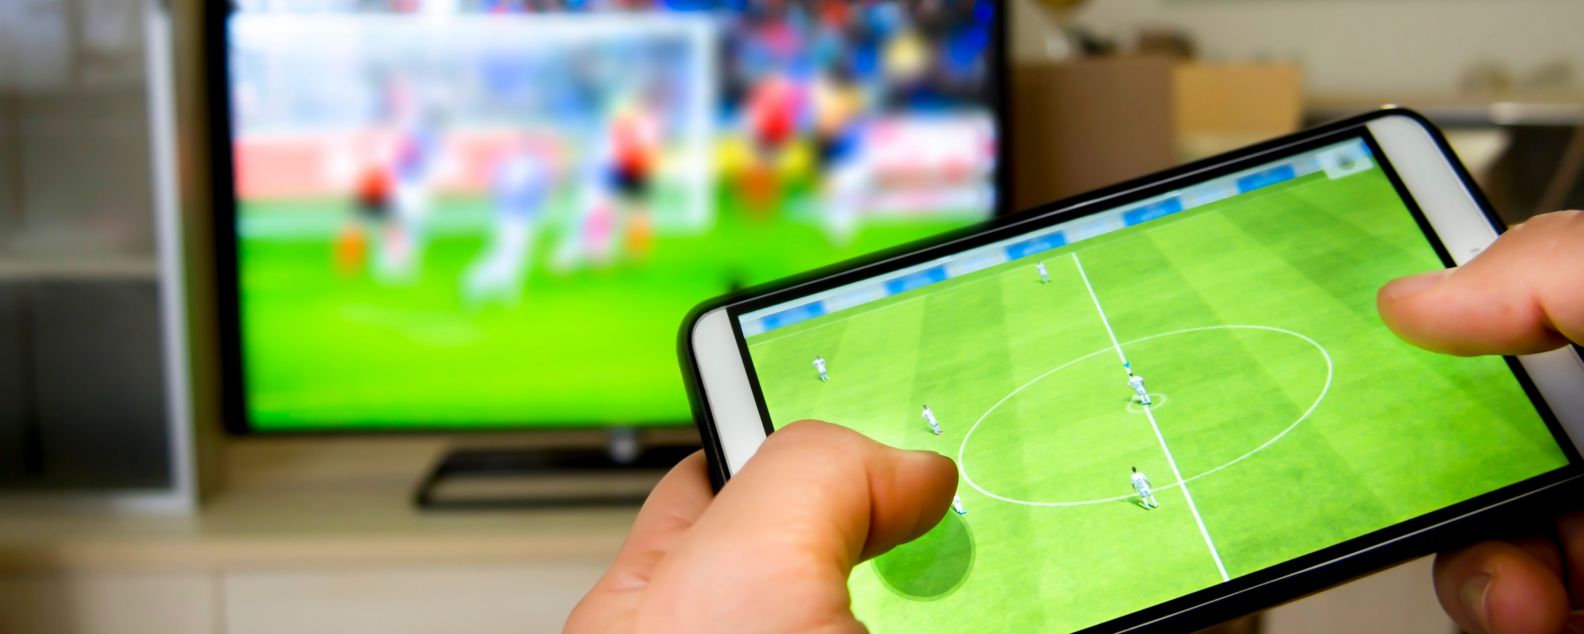 テレビで試合を見ながら、モバイル・デバイスでサッカーの試合をする人